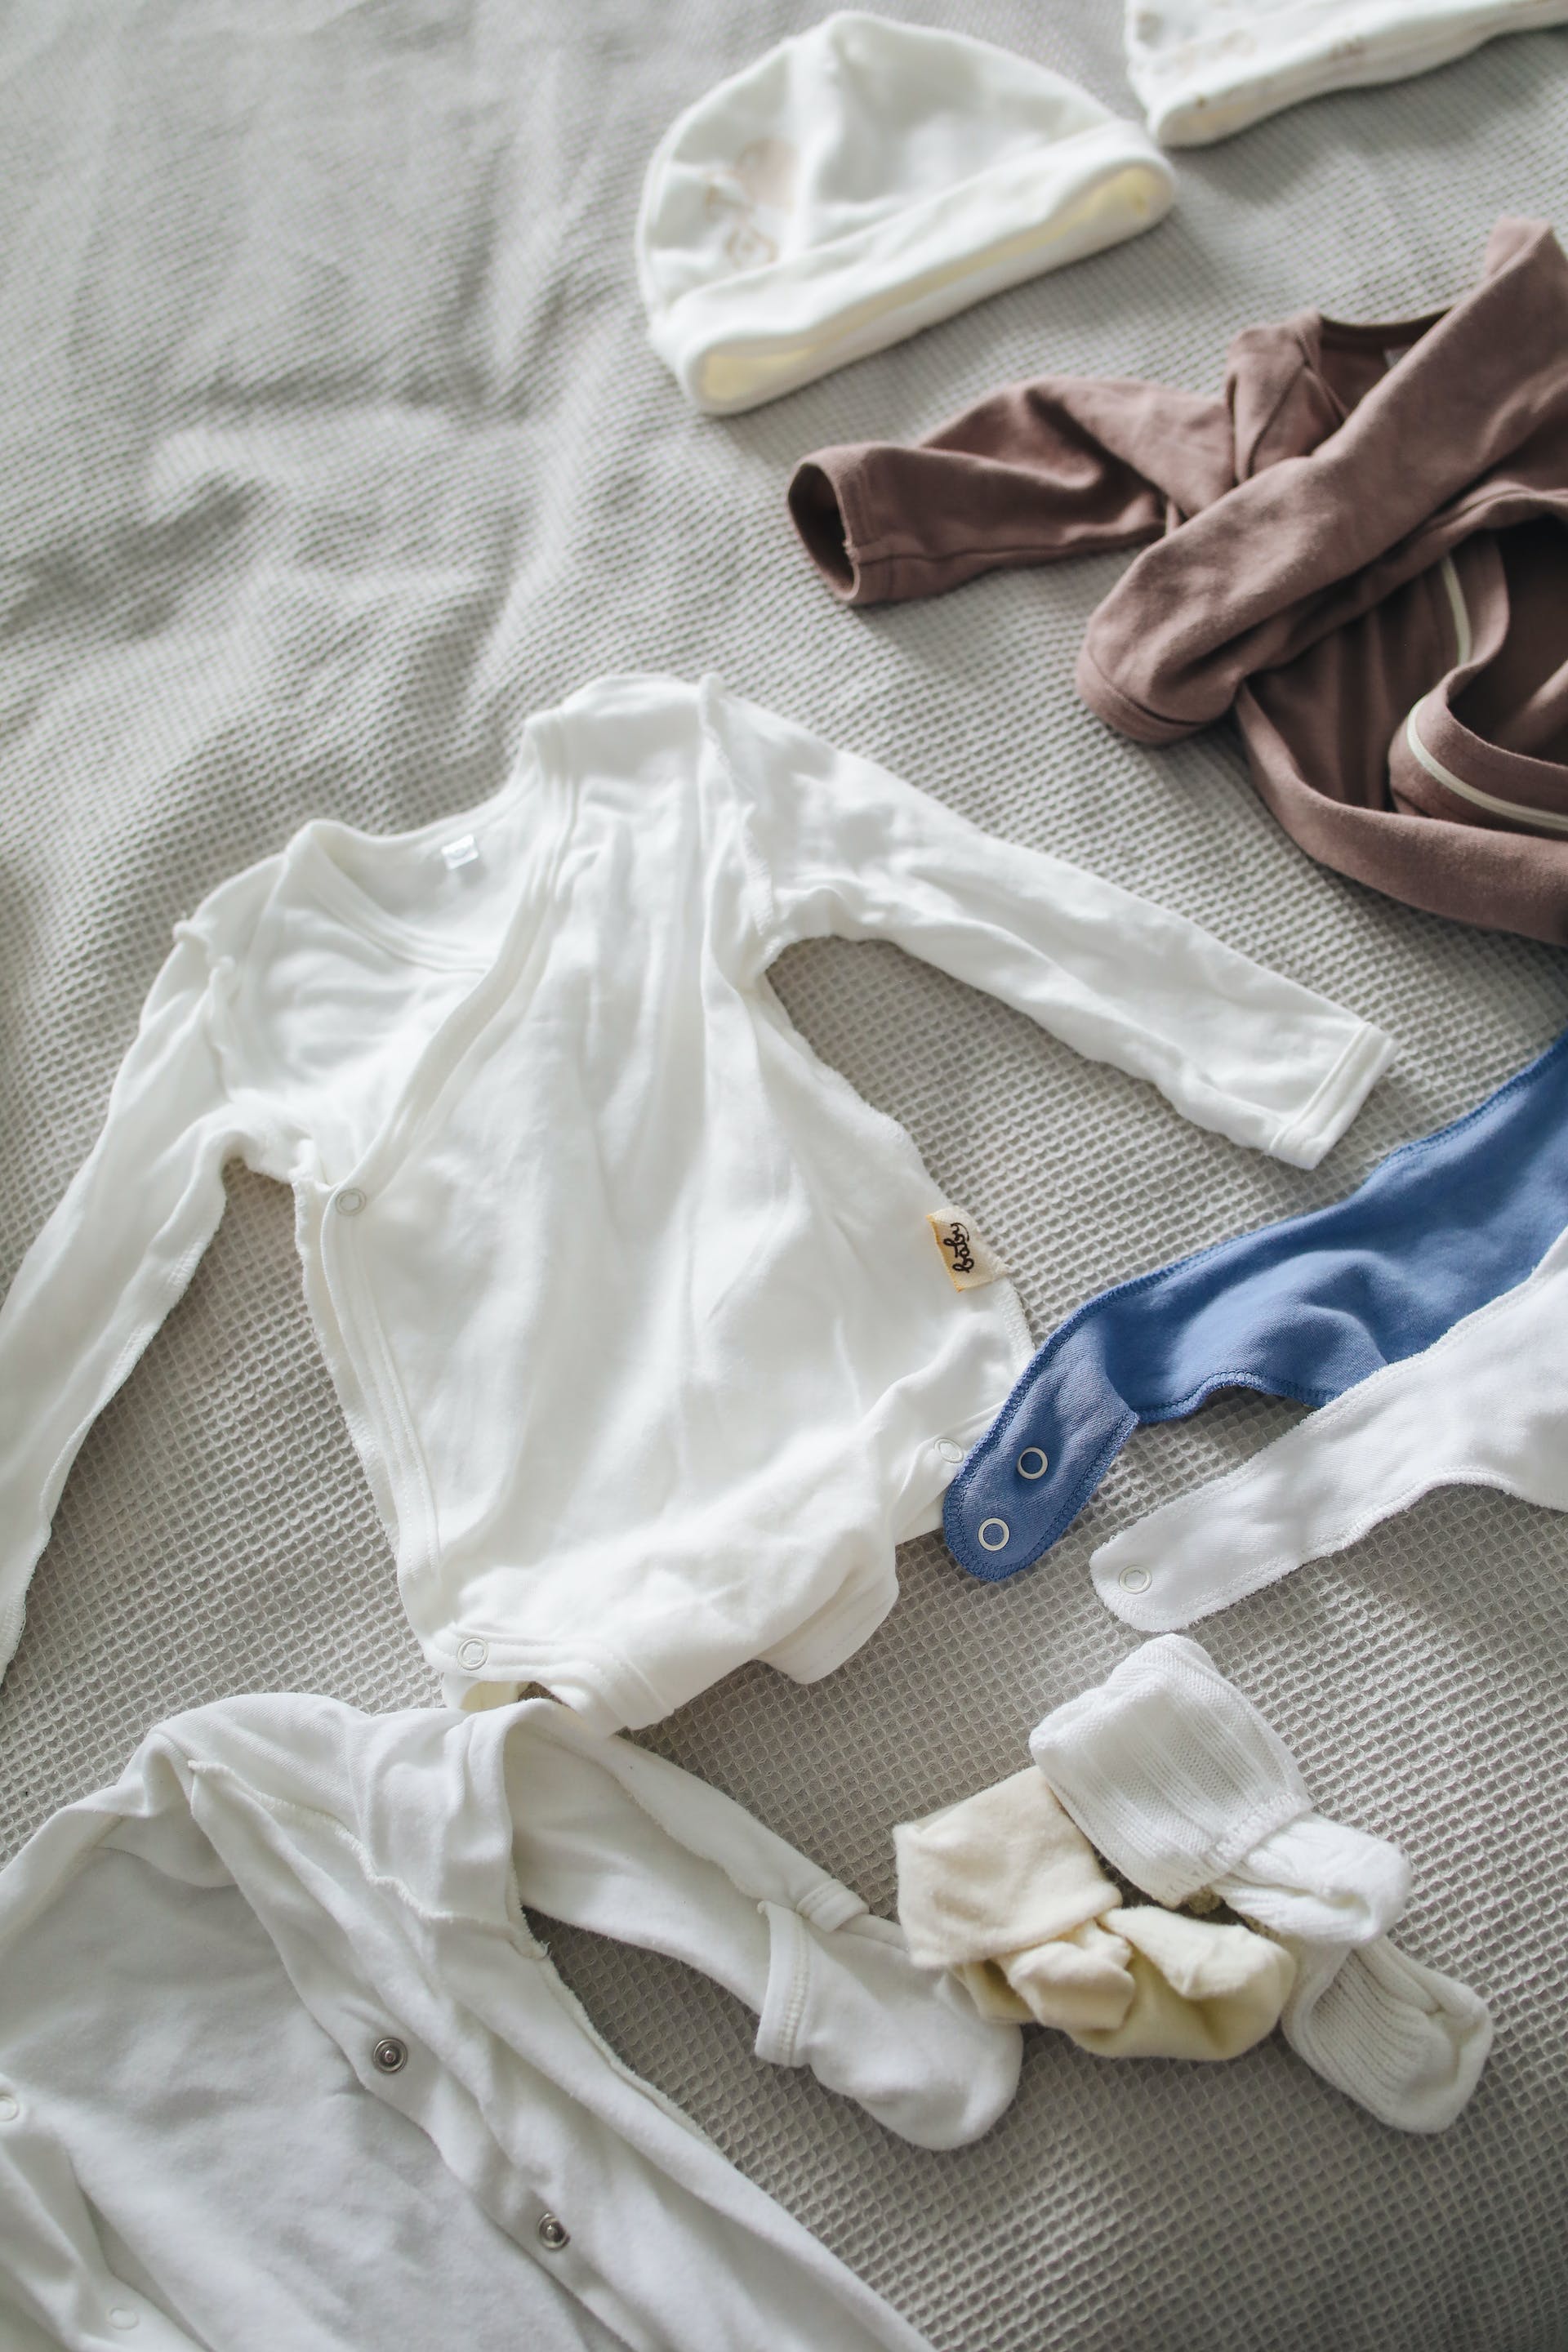 Auf einer Fläche ausgelegte Babykleidung | Quelle: Pexels